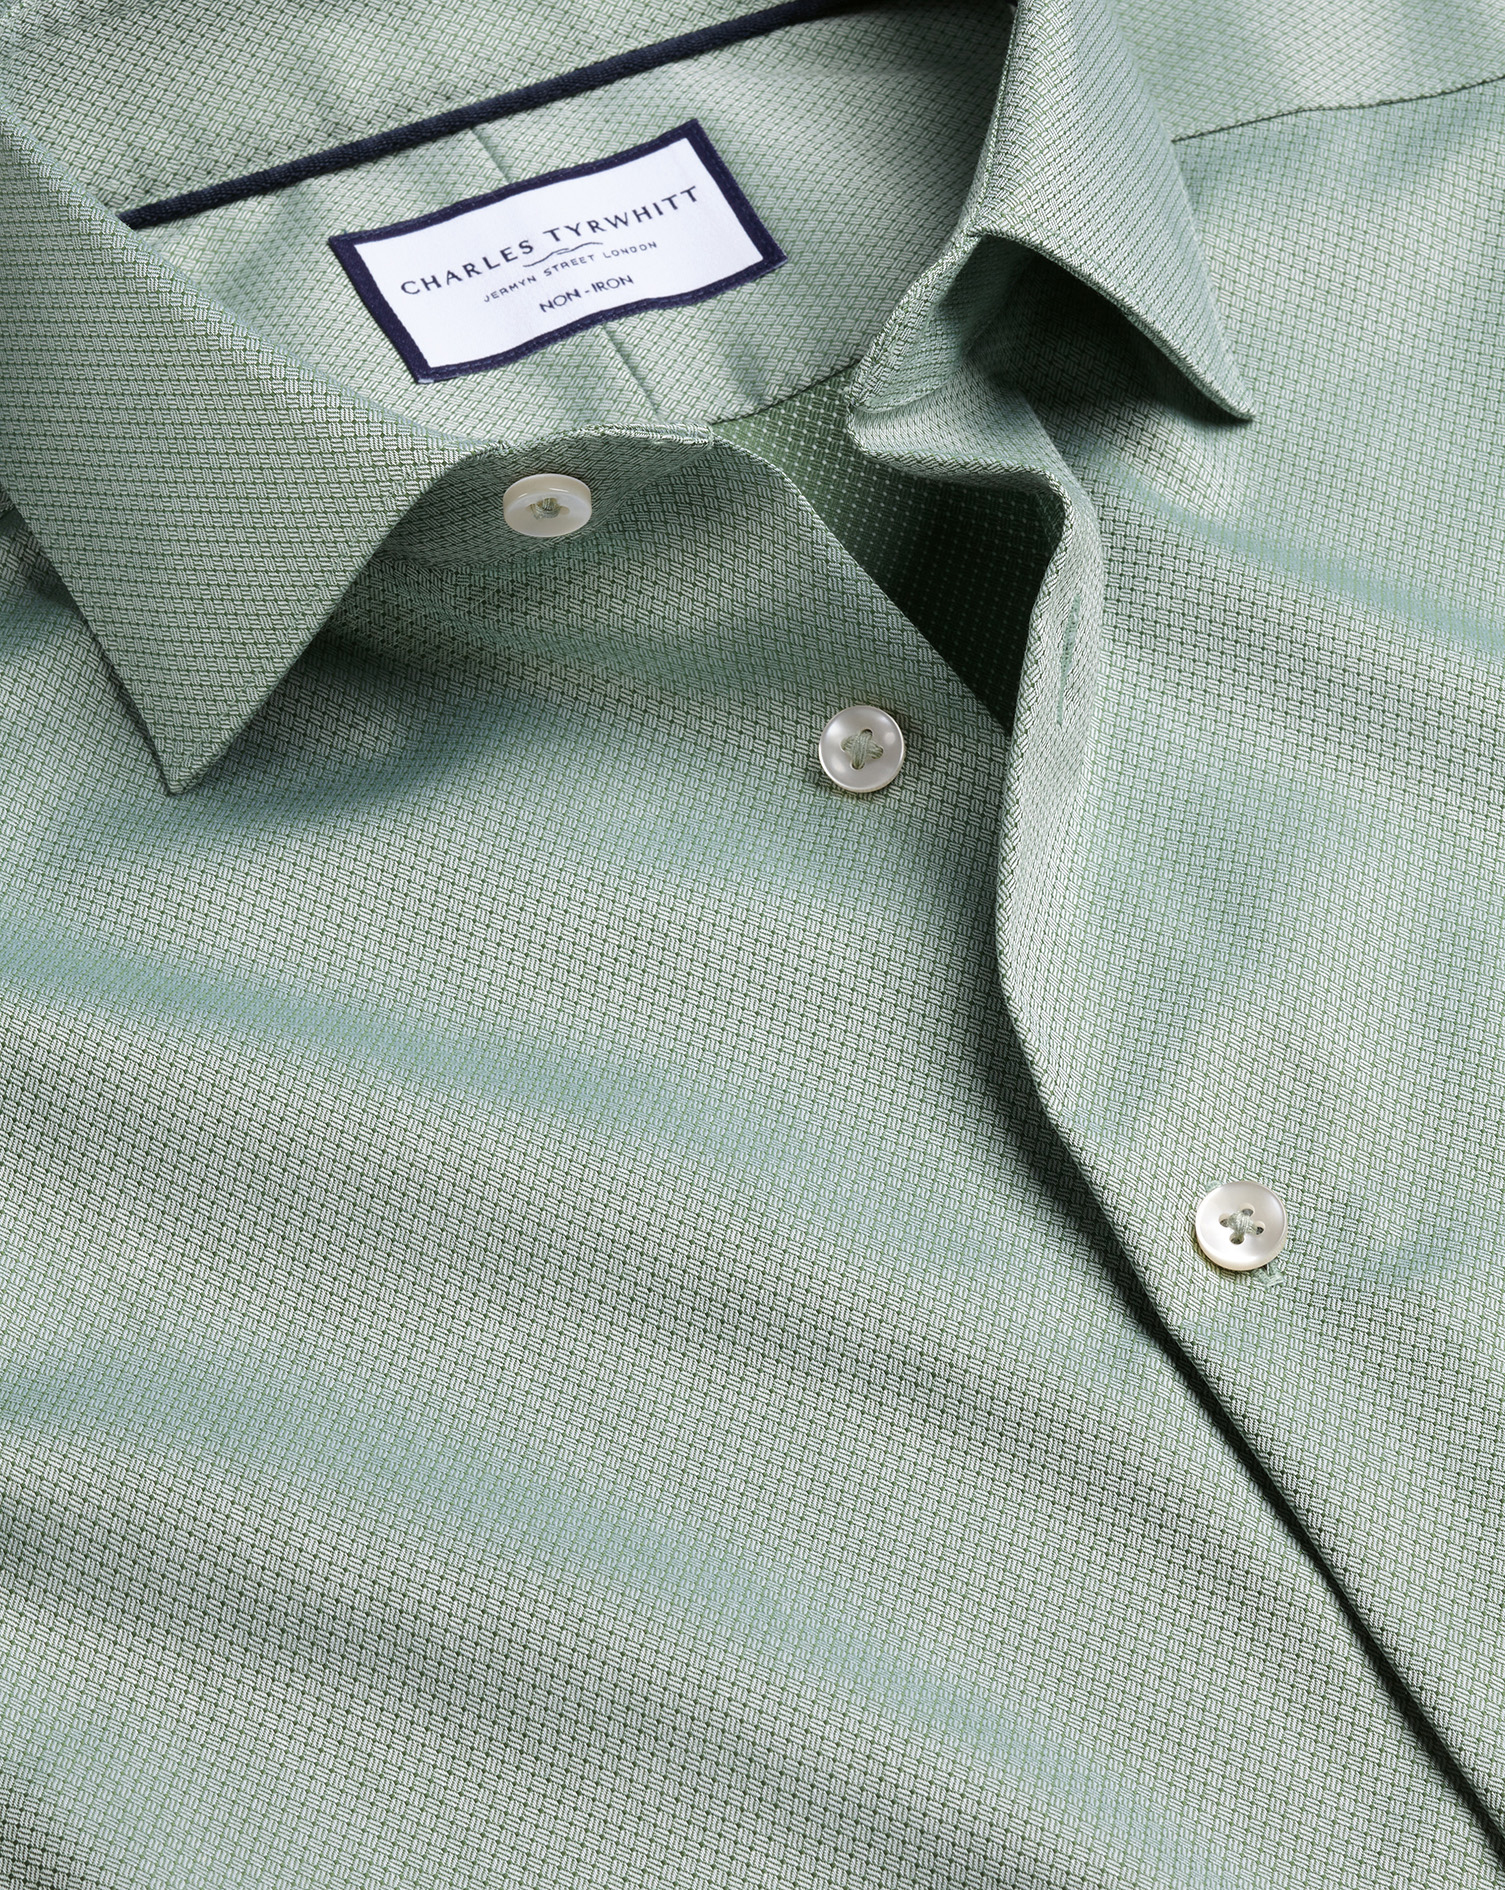 Men's Charles Tyrwhitt Non-Iron Stretch Texture Dress Shirt - Light Green Single Cuff Size 18/35 Cot